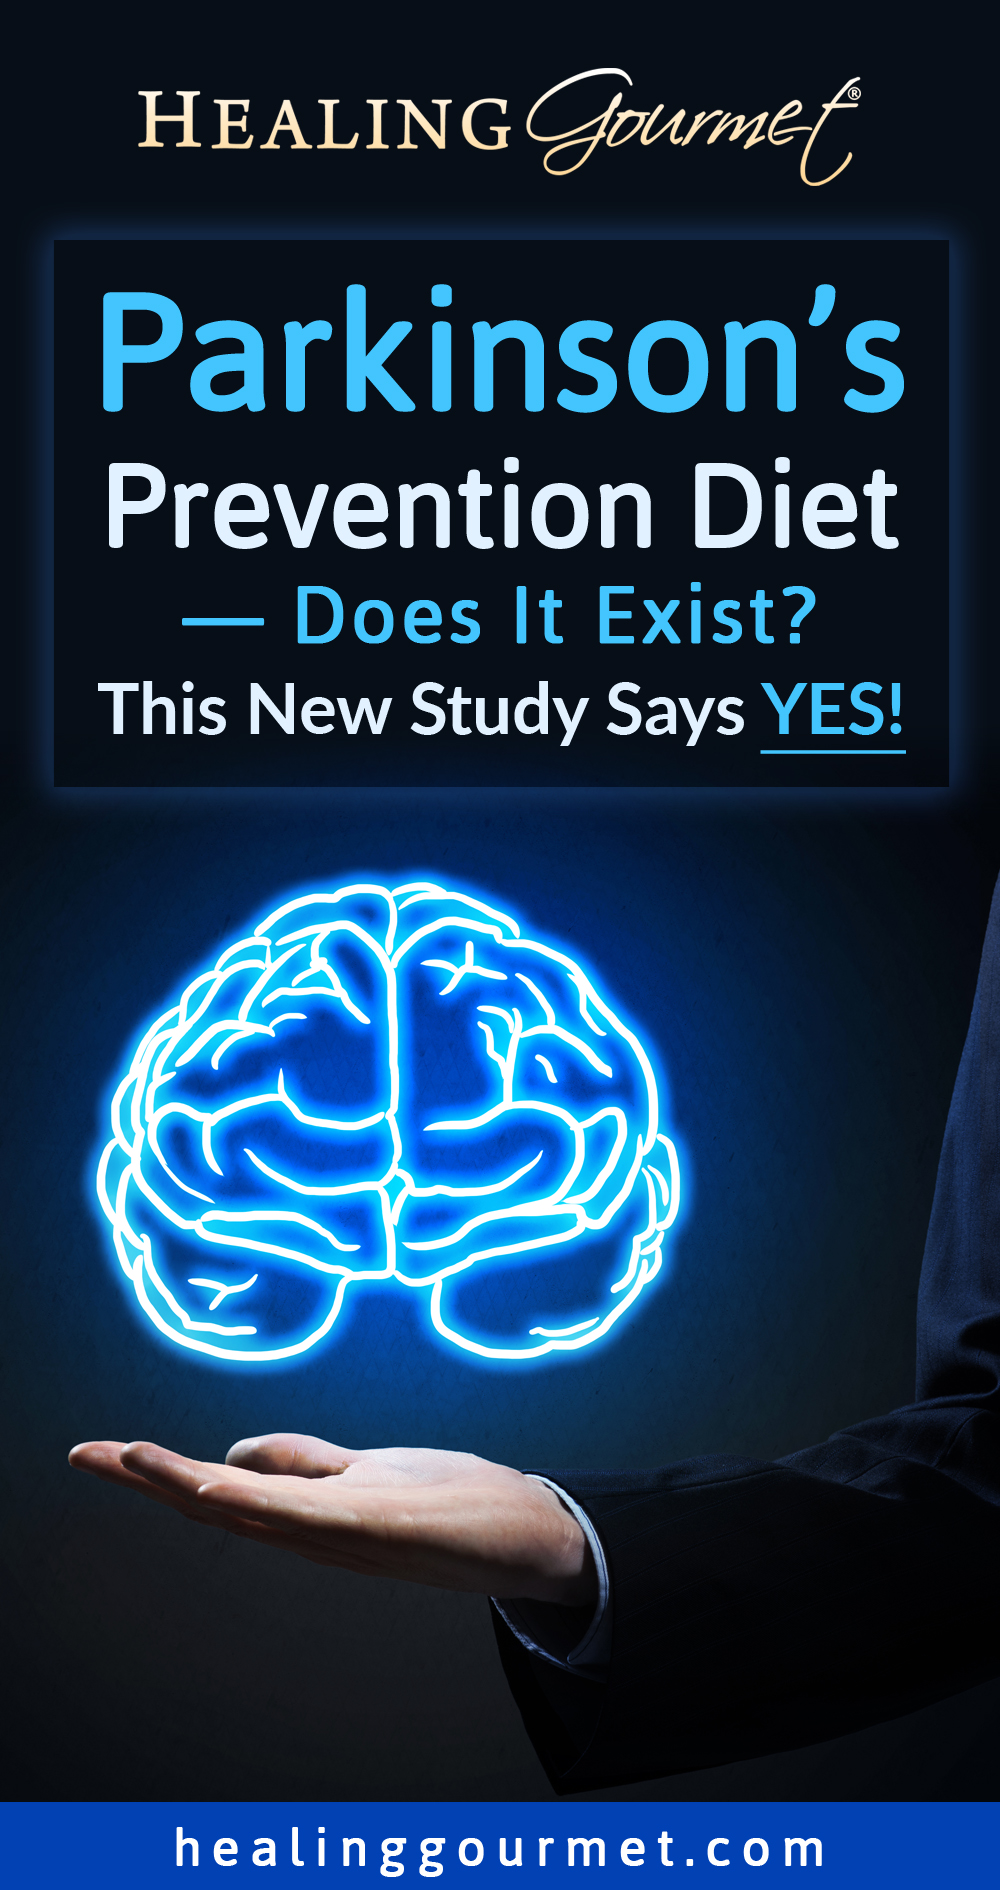 Parkinsons Prevention Diet — Does It Exist?